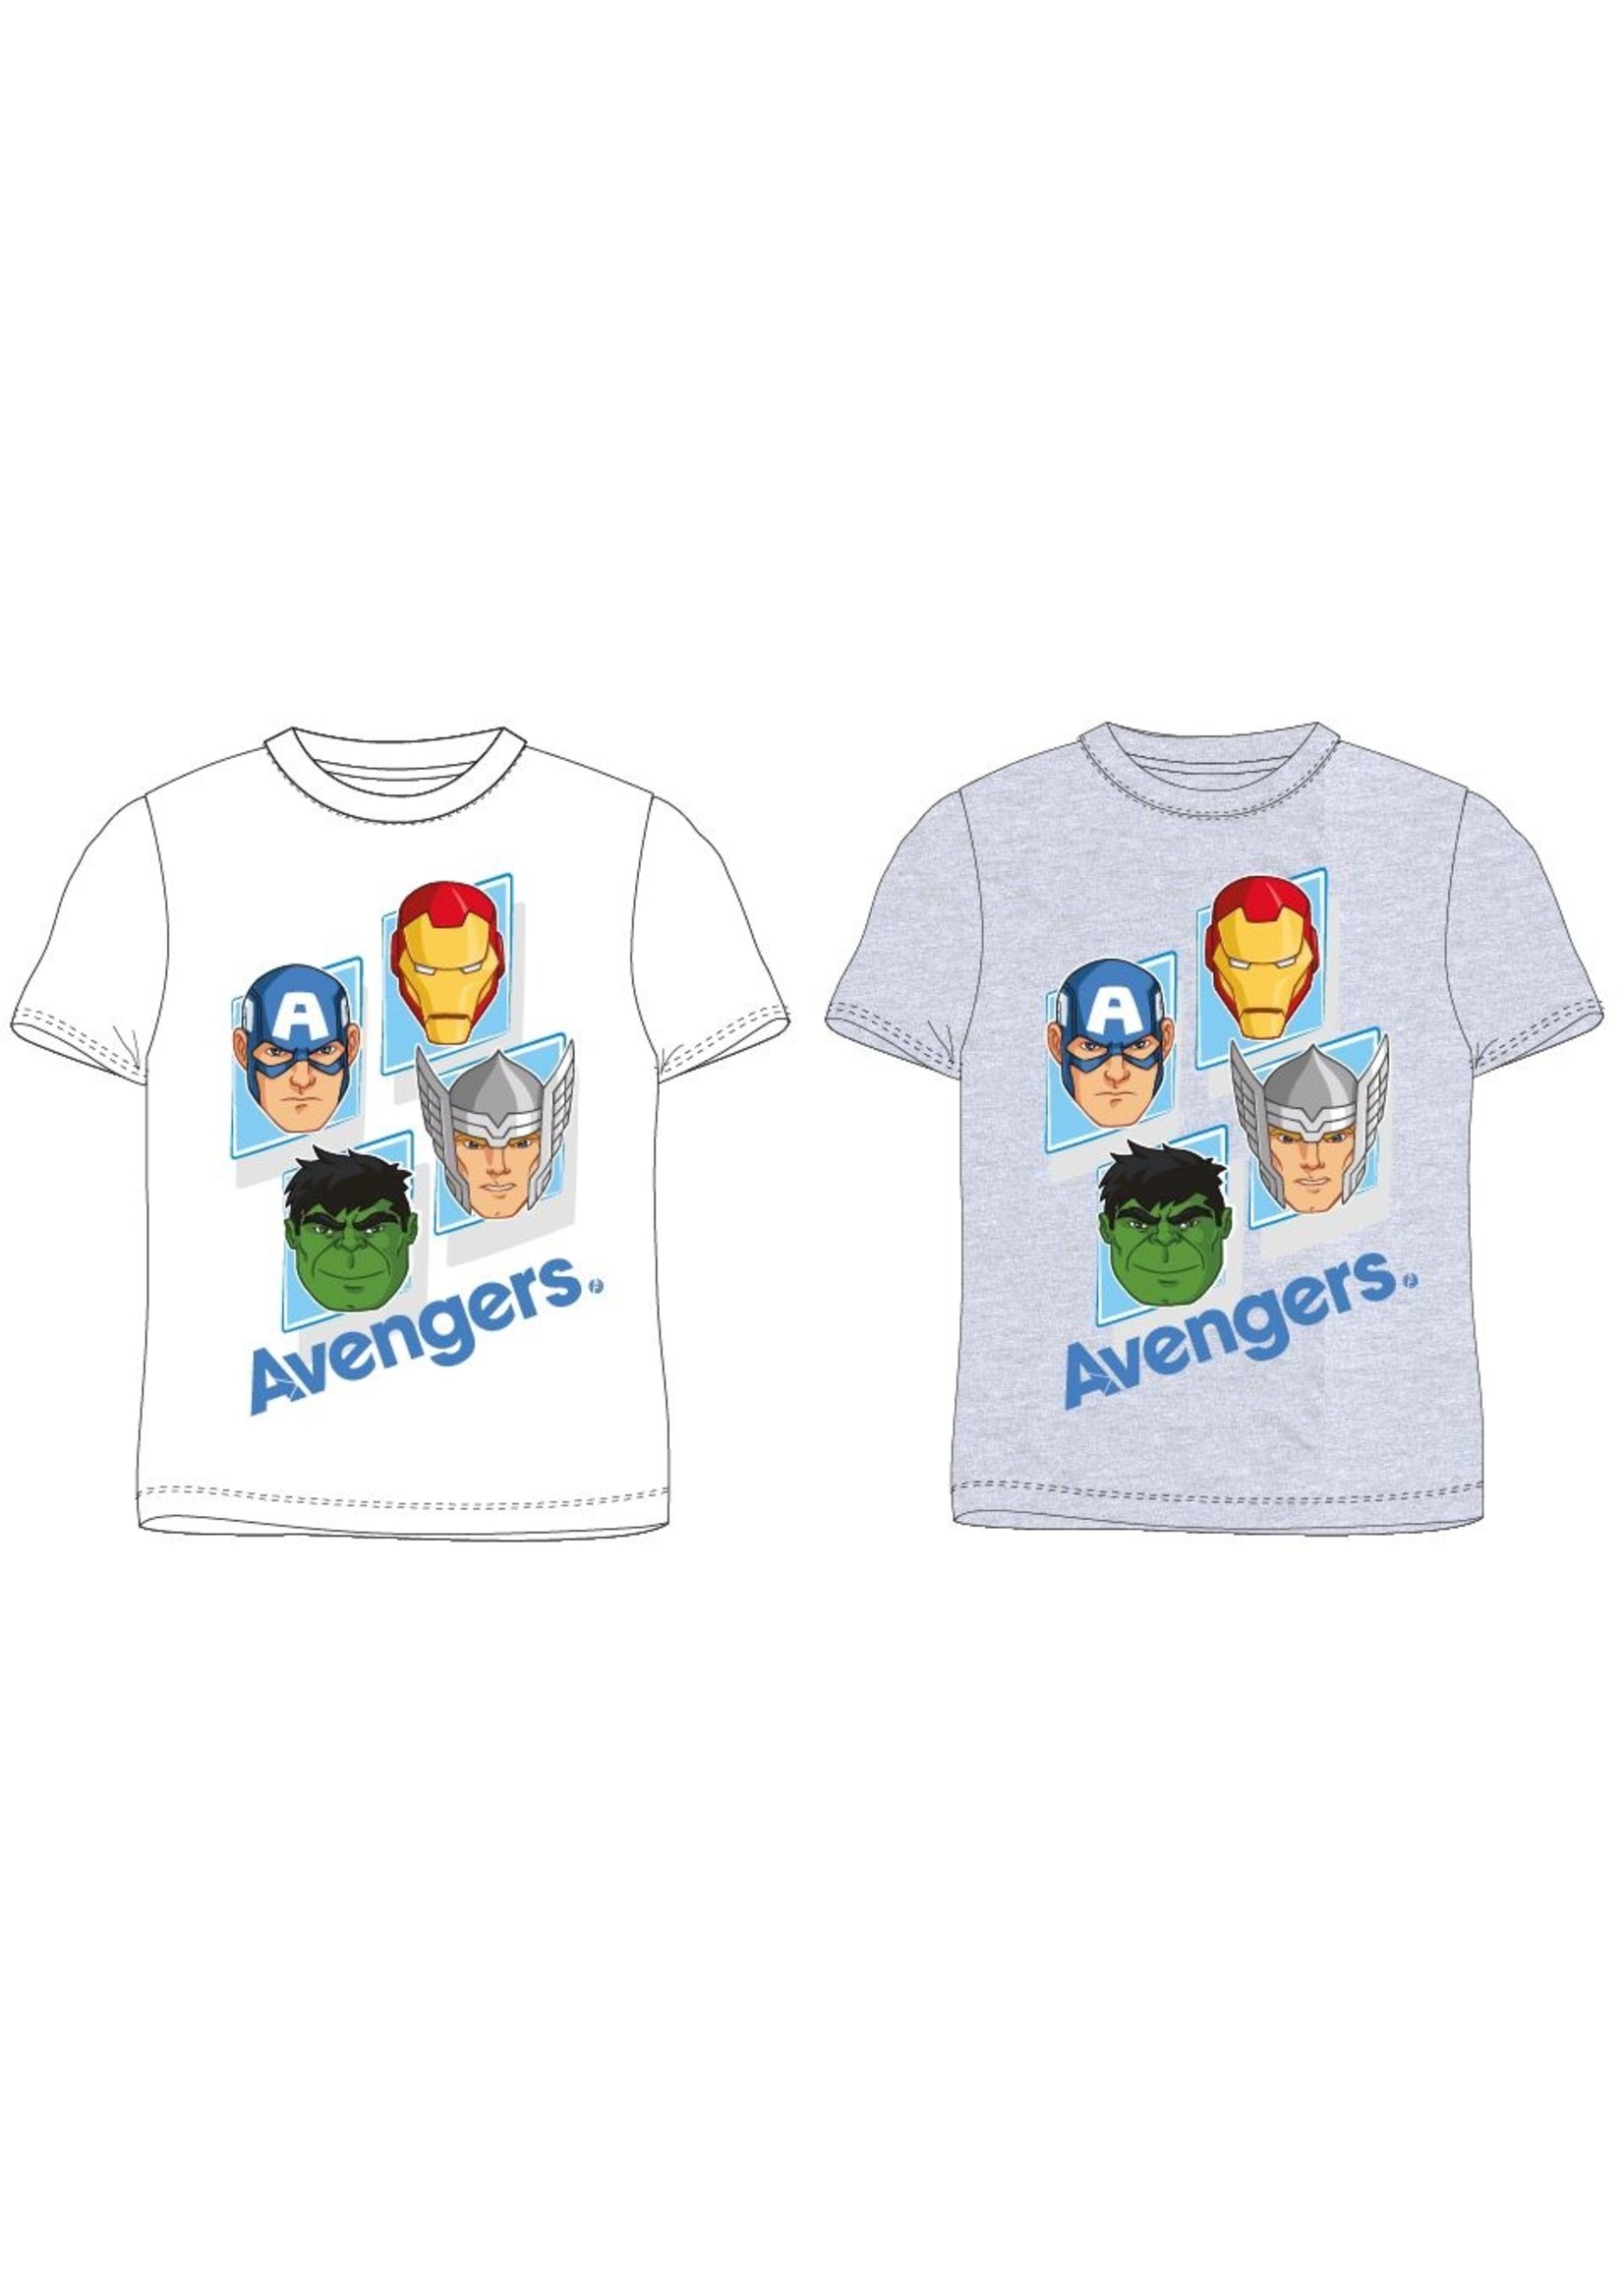 Marvel Avengers T-shirt from Marvel grey